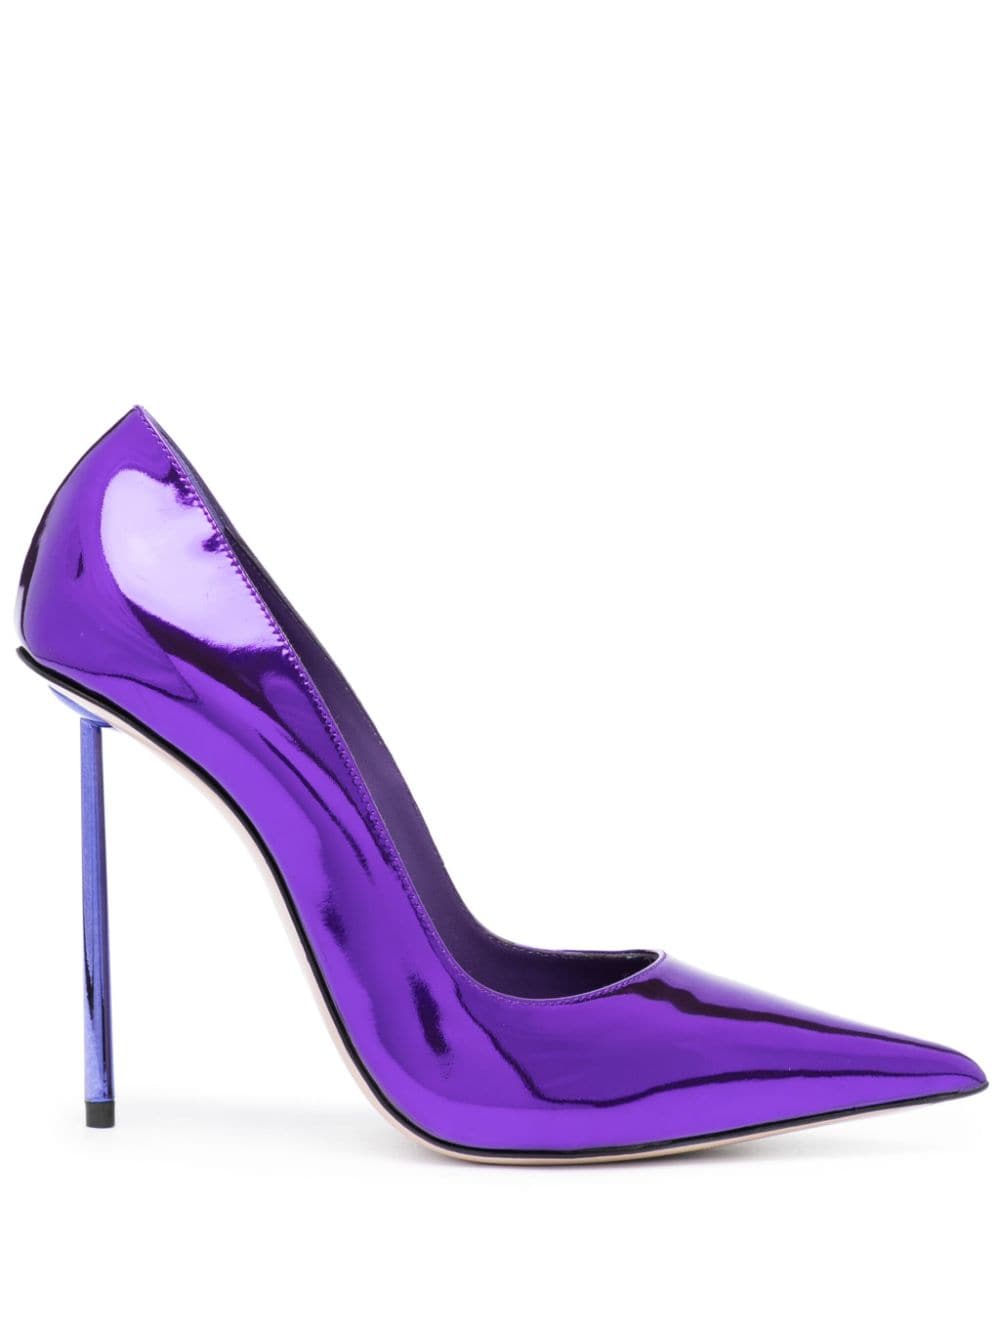 Le Silla Bella 115mm leather pumps - Purple von Le Silla